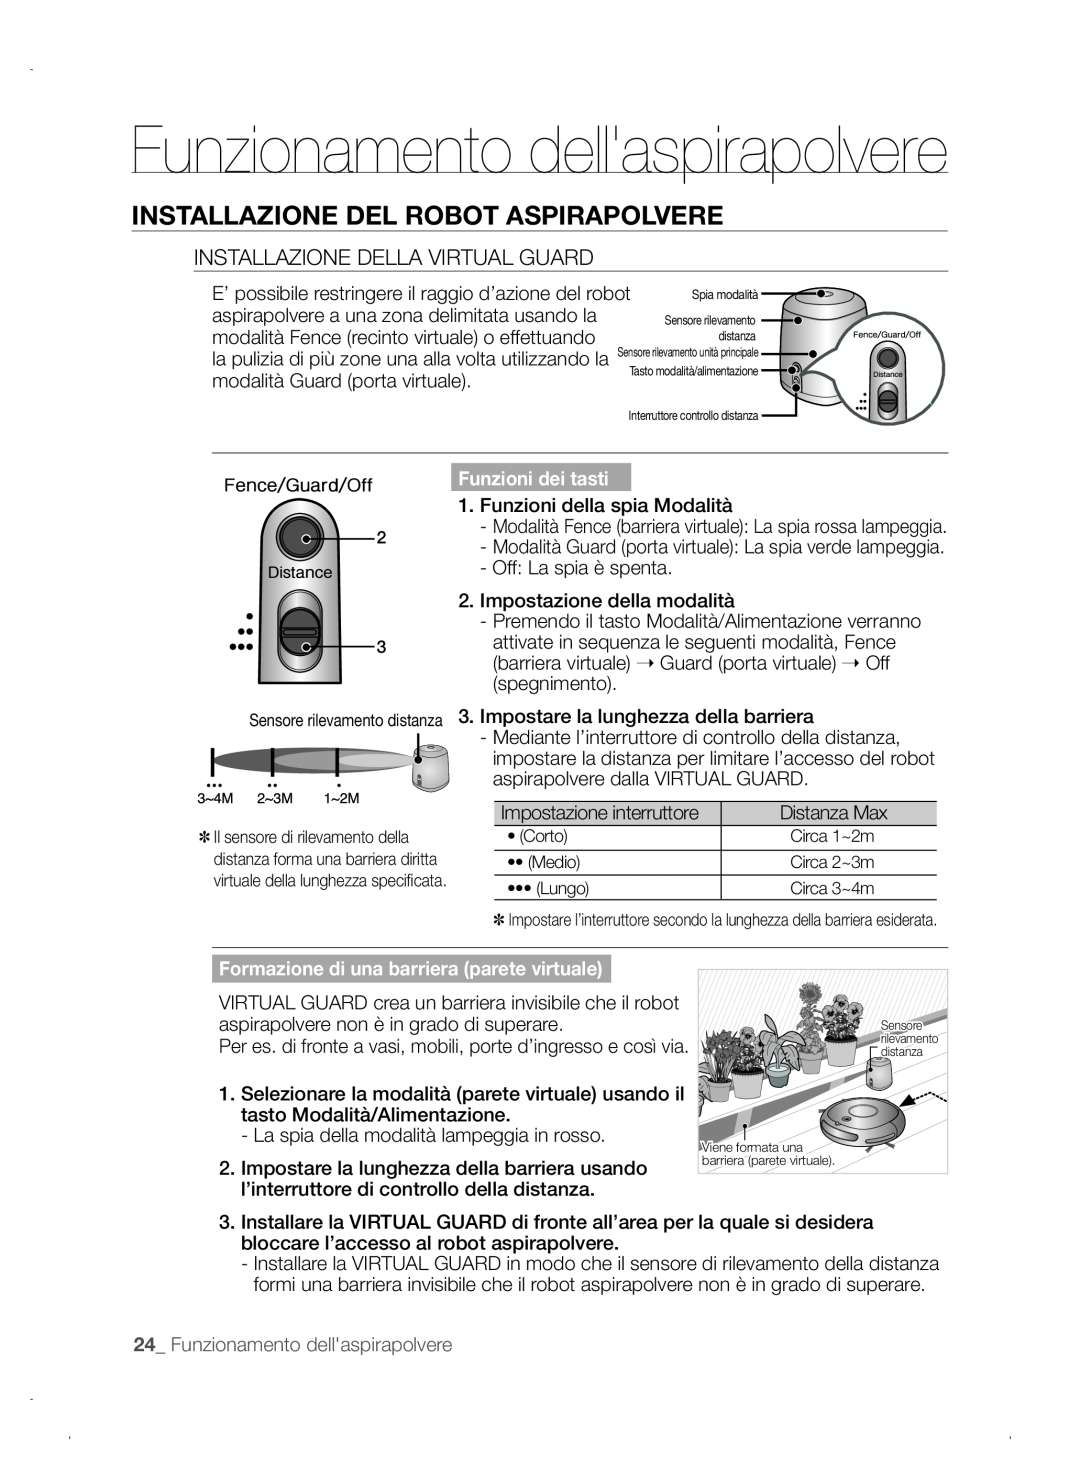 Samsung VCR8845T3A/XET manual Funzionamento dellaspirapolvere, Installazione Del Robot Aspirapolvere, Funzioni dei tasti 